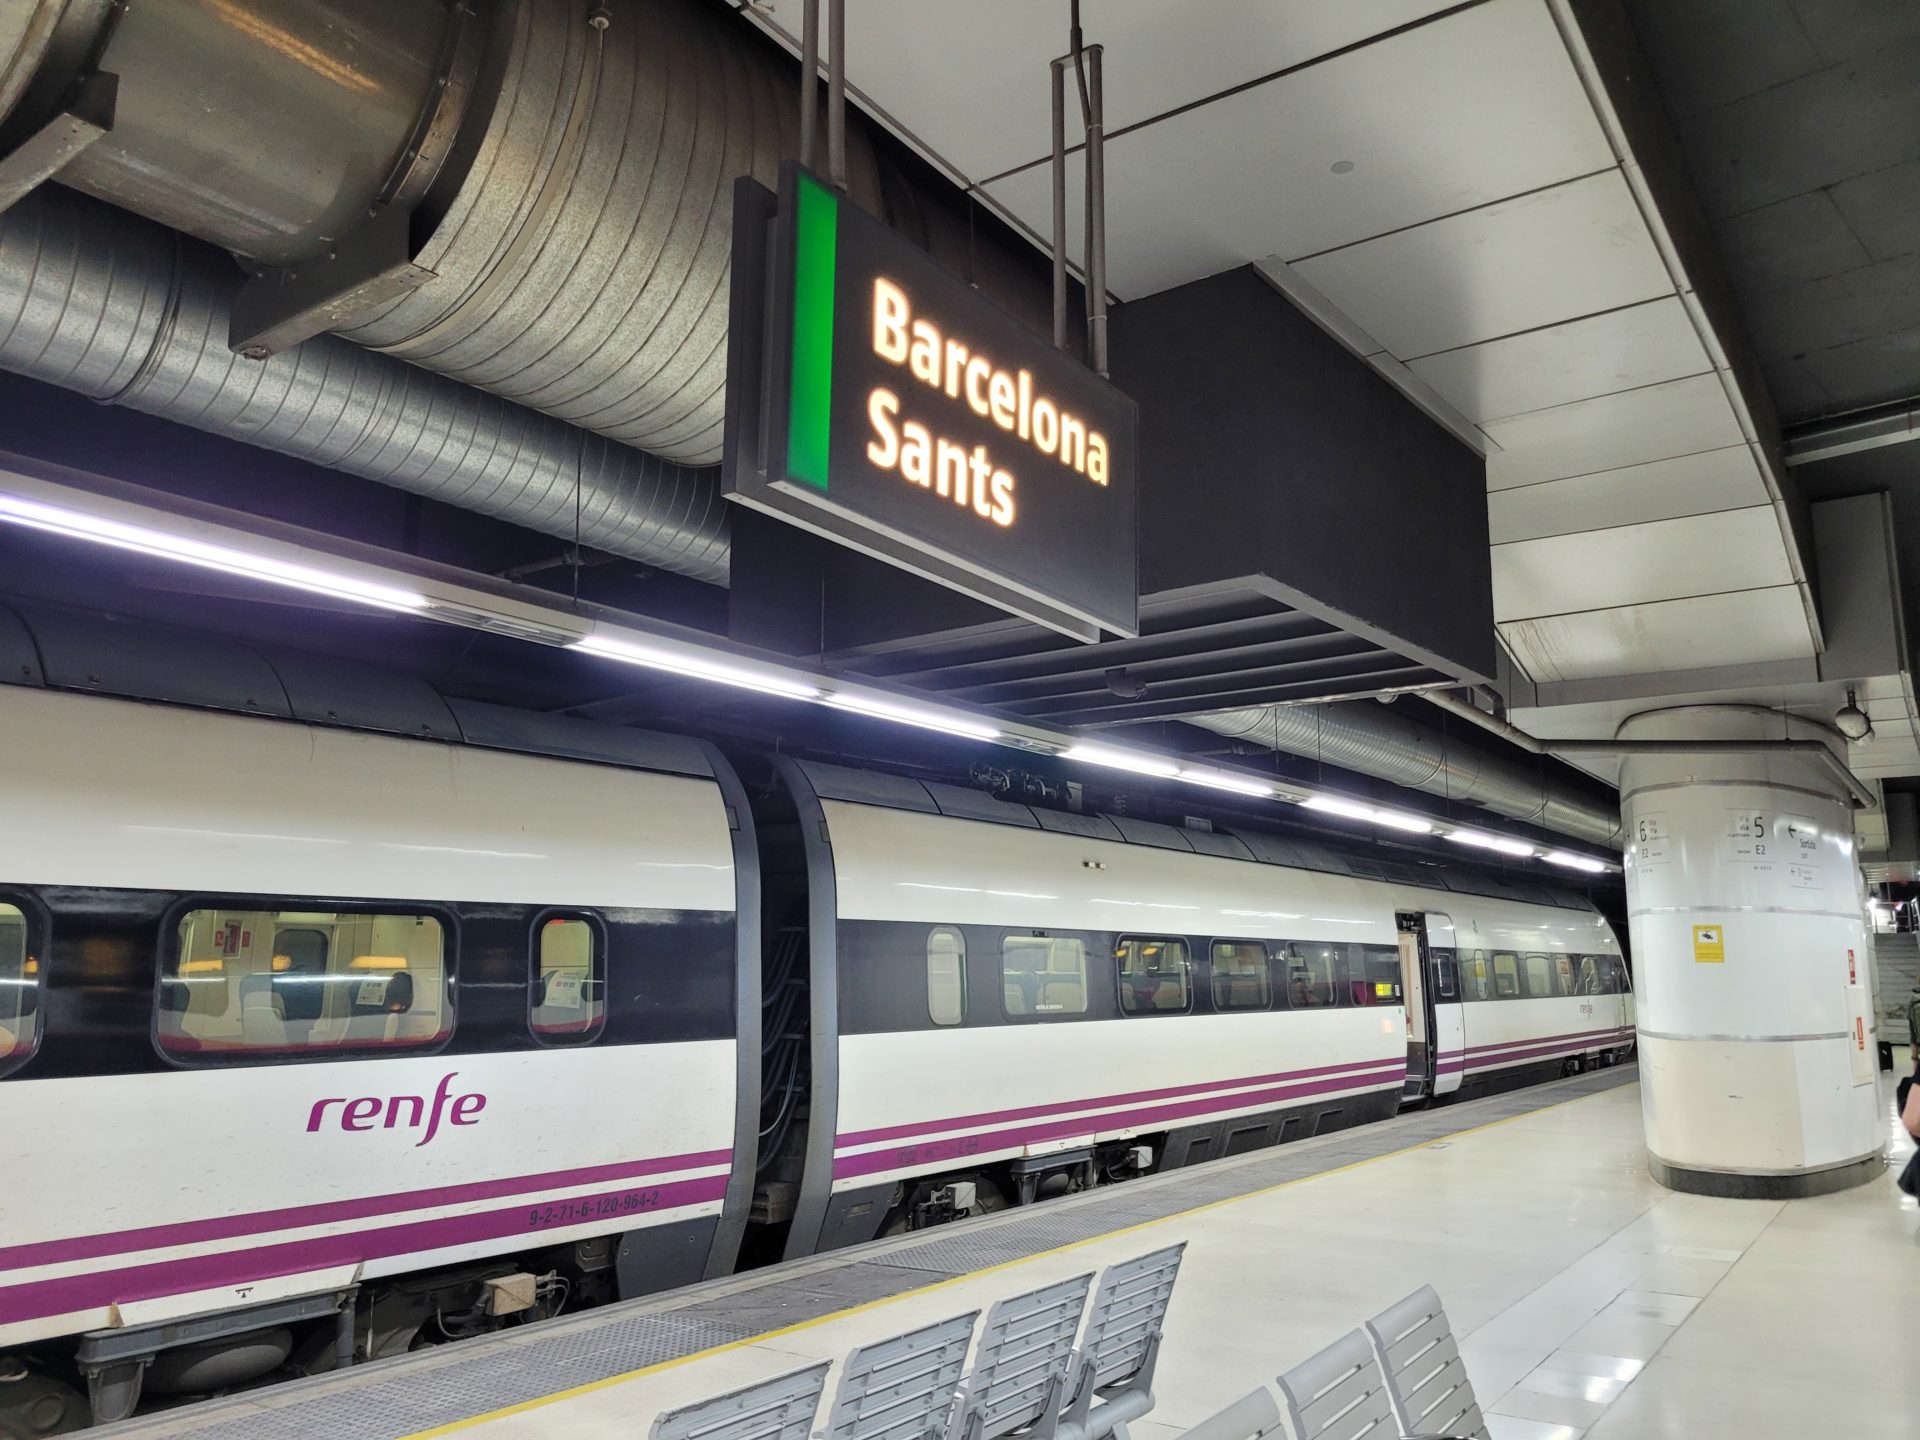 A Renfe train in Barcelona, Spain.